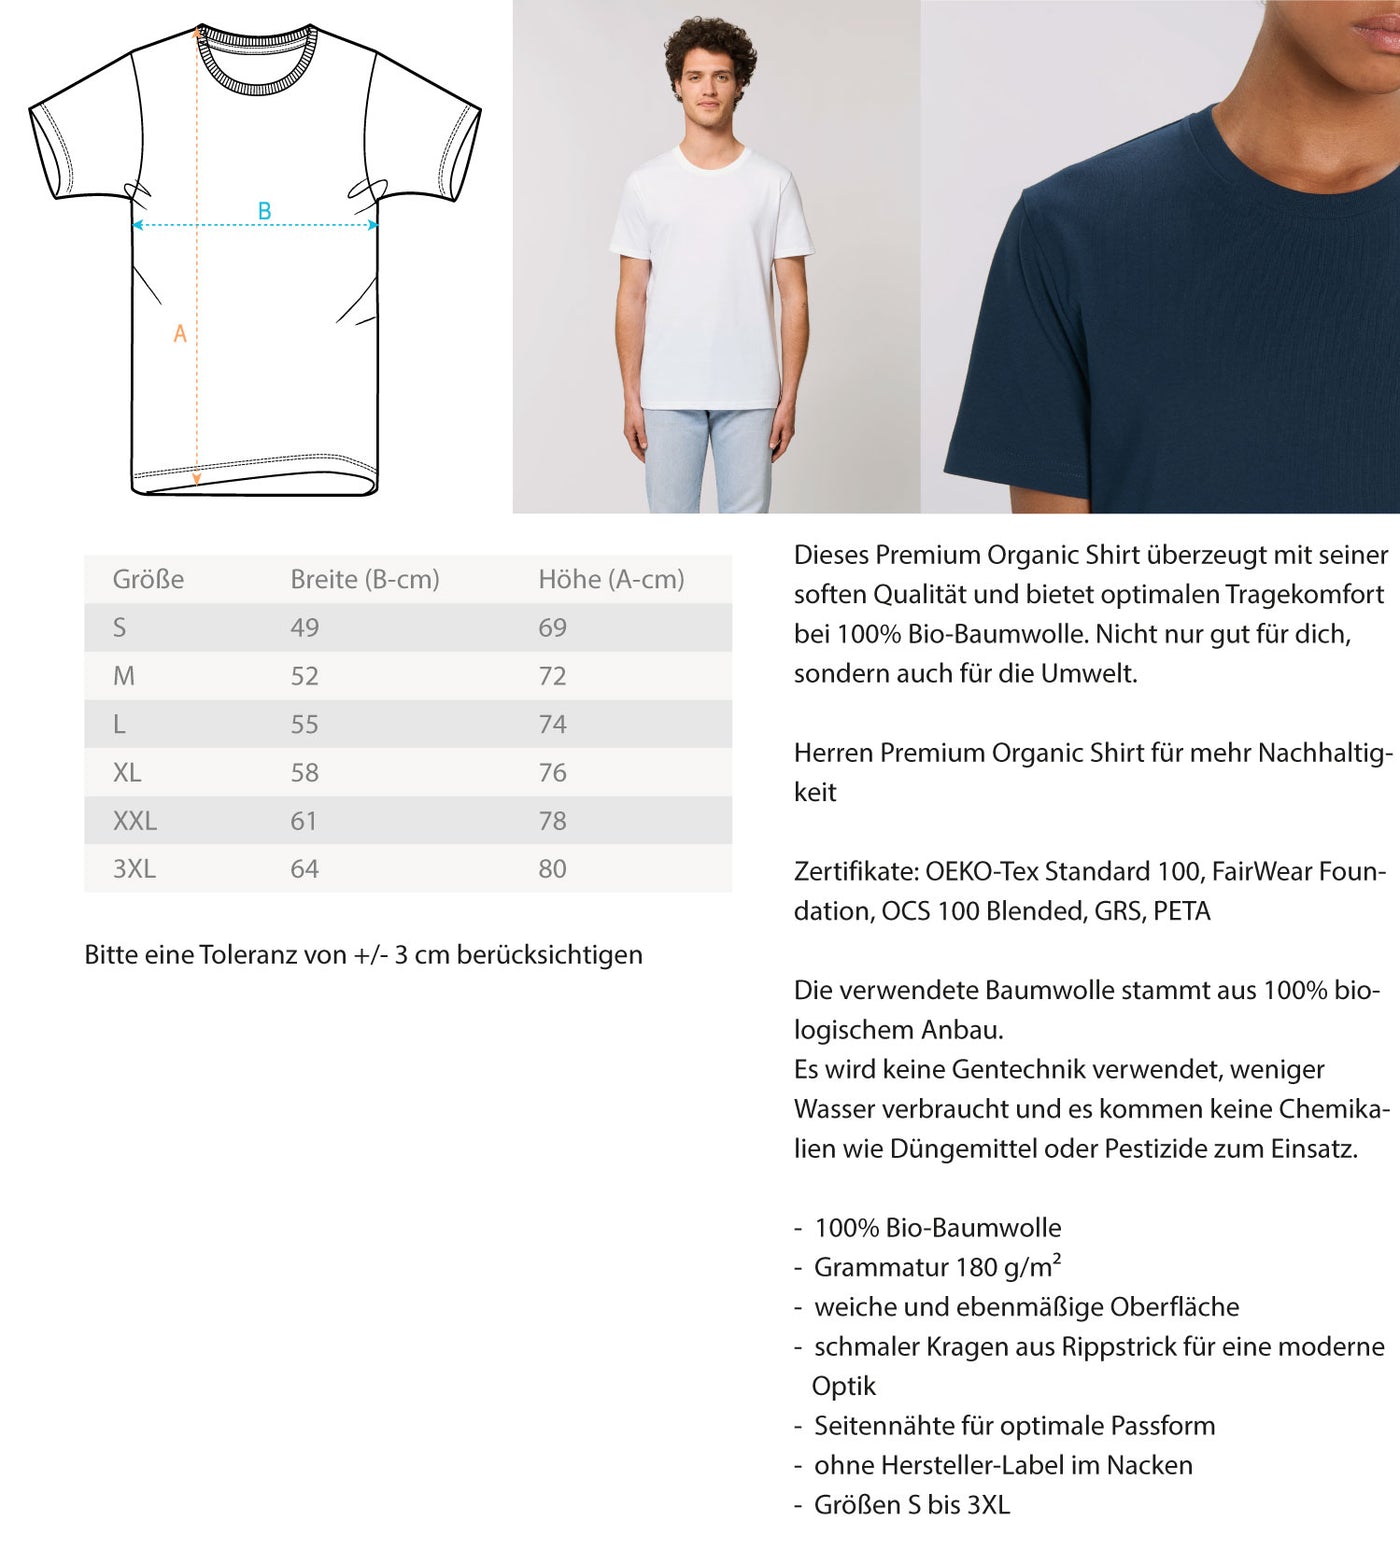 Ehemann, Vater, Kletterer, Held - Herren Premium Organic T-Shirt klettern